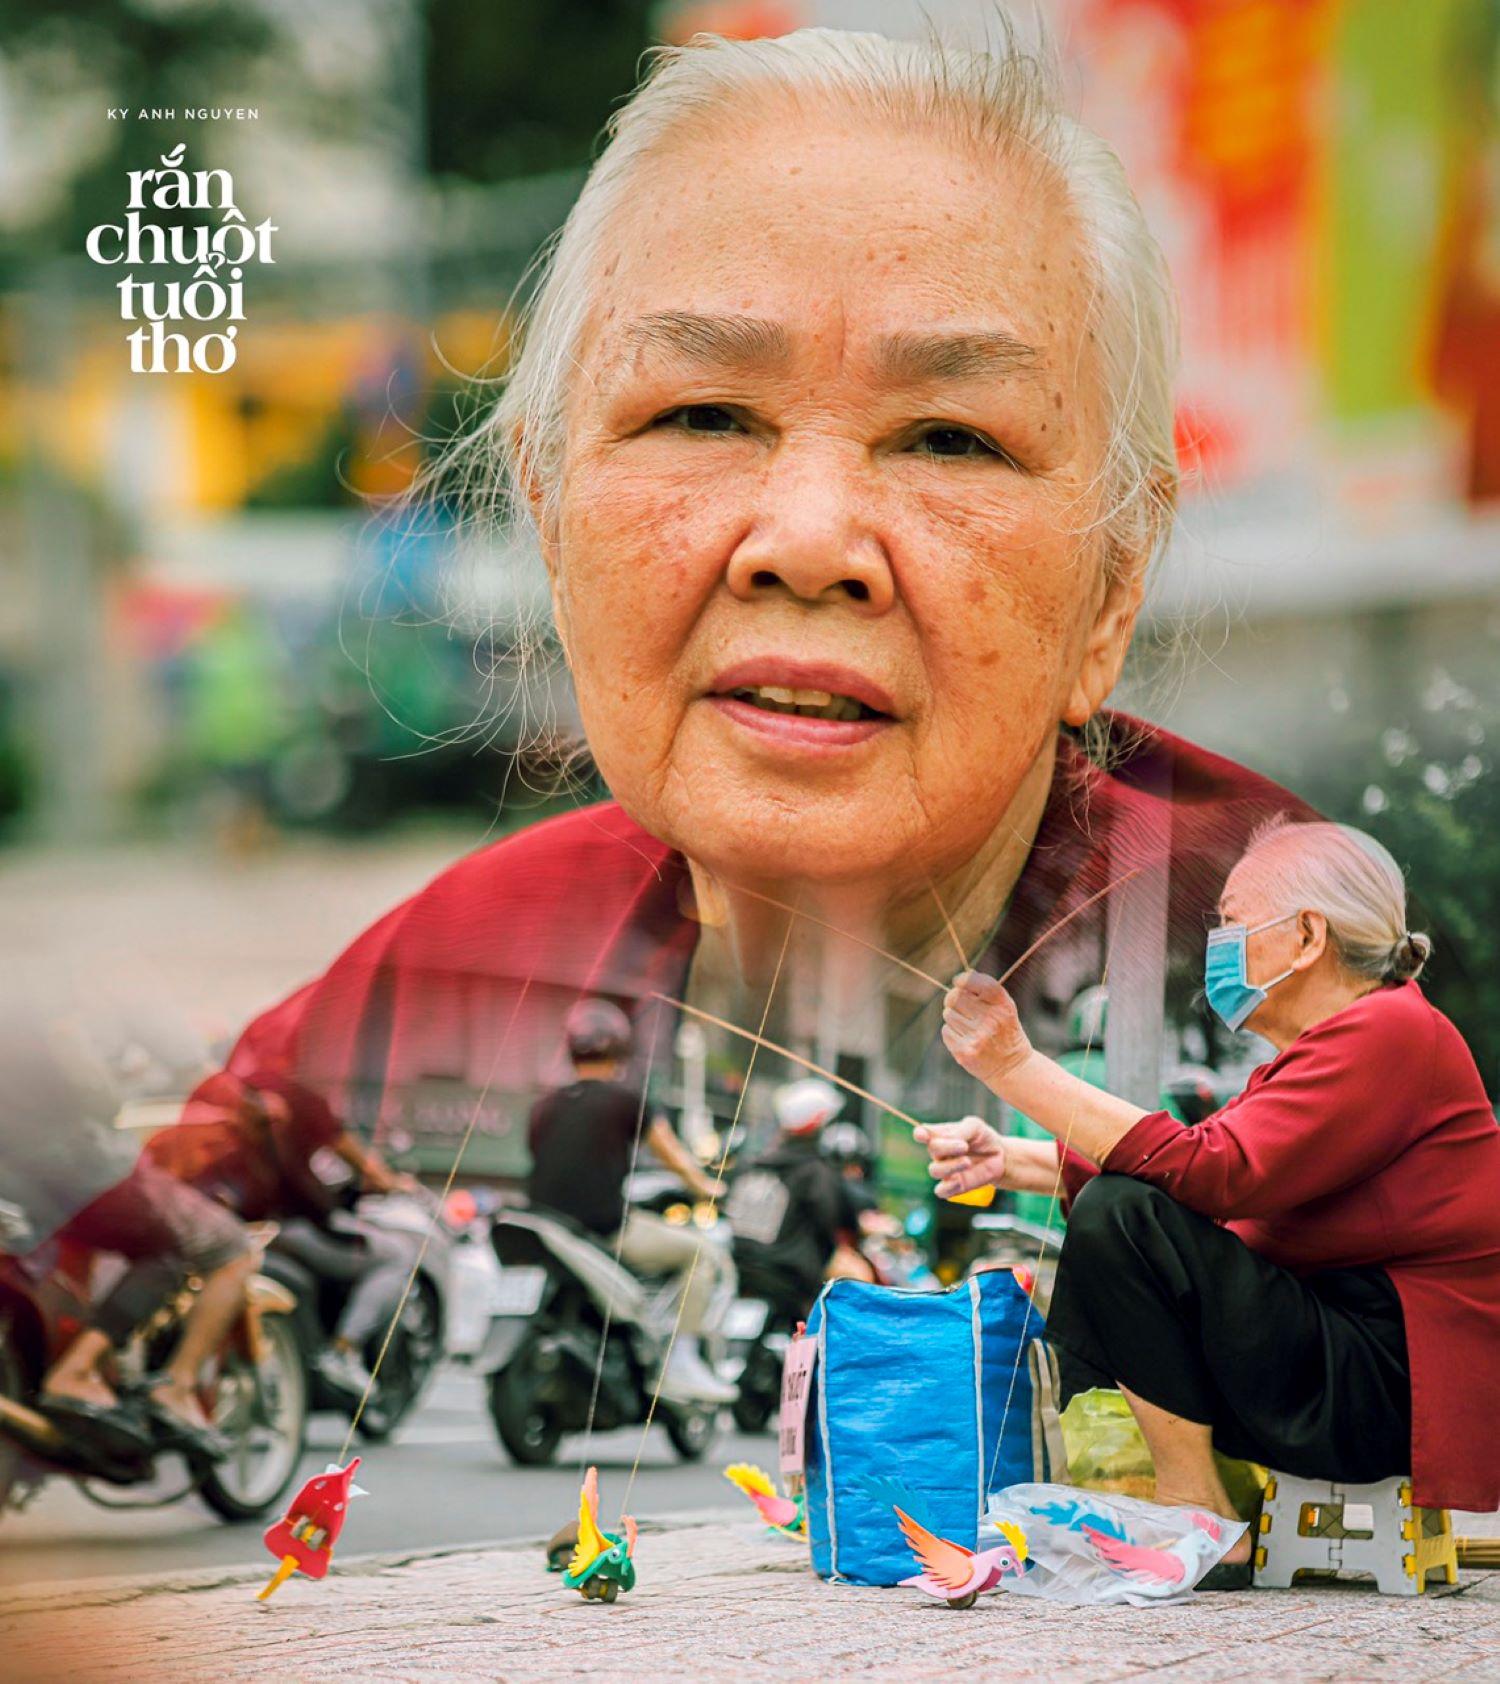 Bộ ảnh Sài Gòn dễ thương trong những ngày 'bình thường mới'